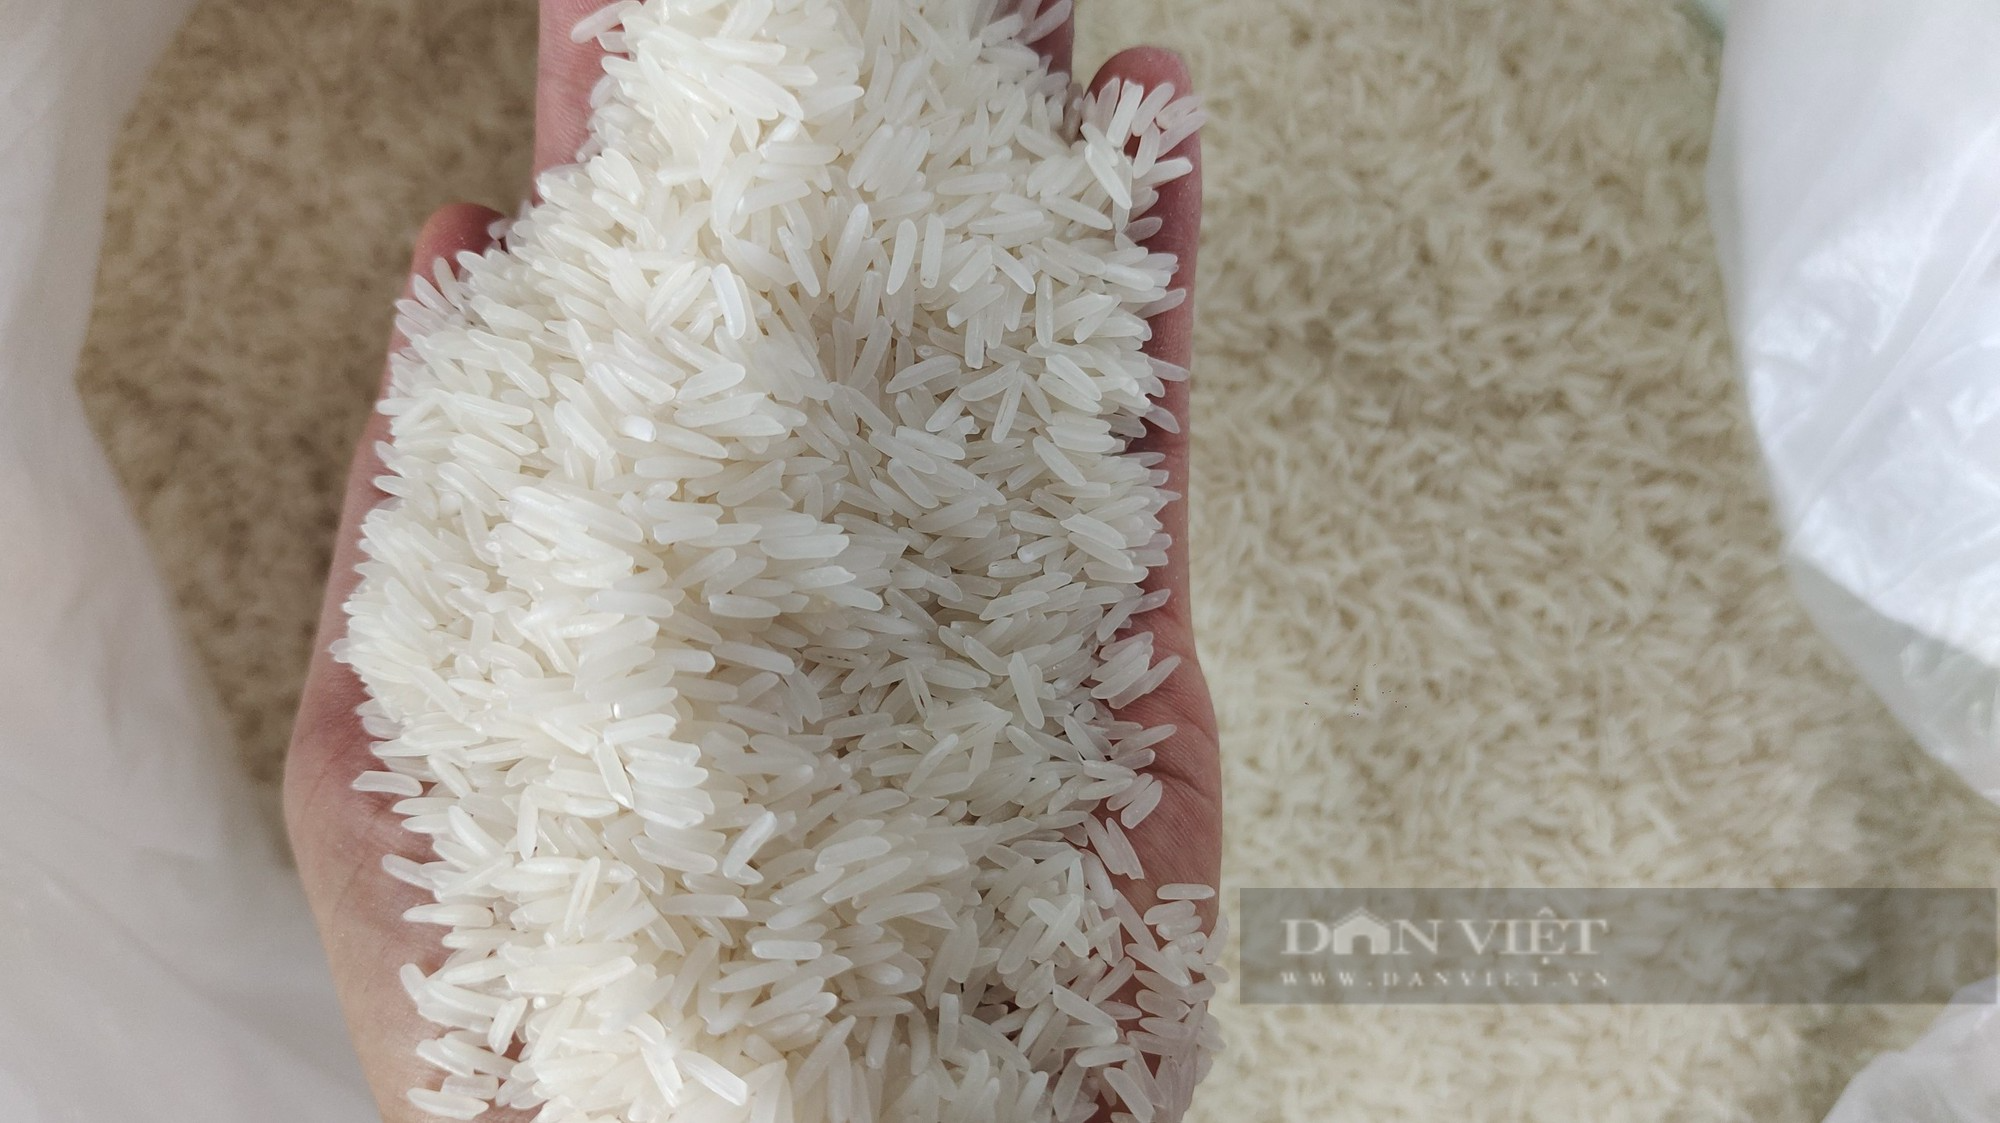 Giá gạo xuất khẩu tăng nhanh lên gần 650 USD/tấn, doanh nghiệp khó chốt đơn hàng cuối năm - Ảnh 1.